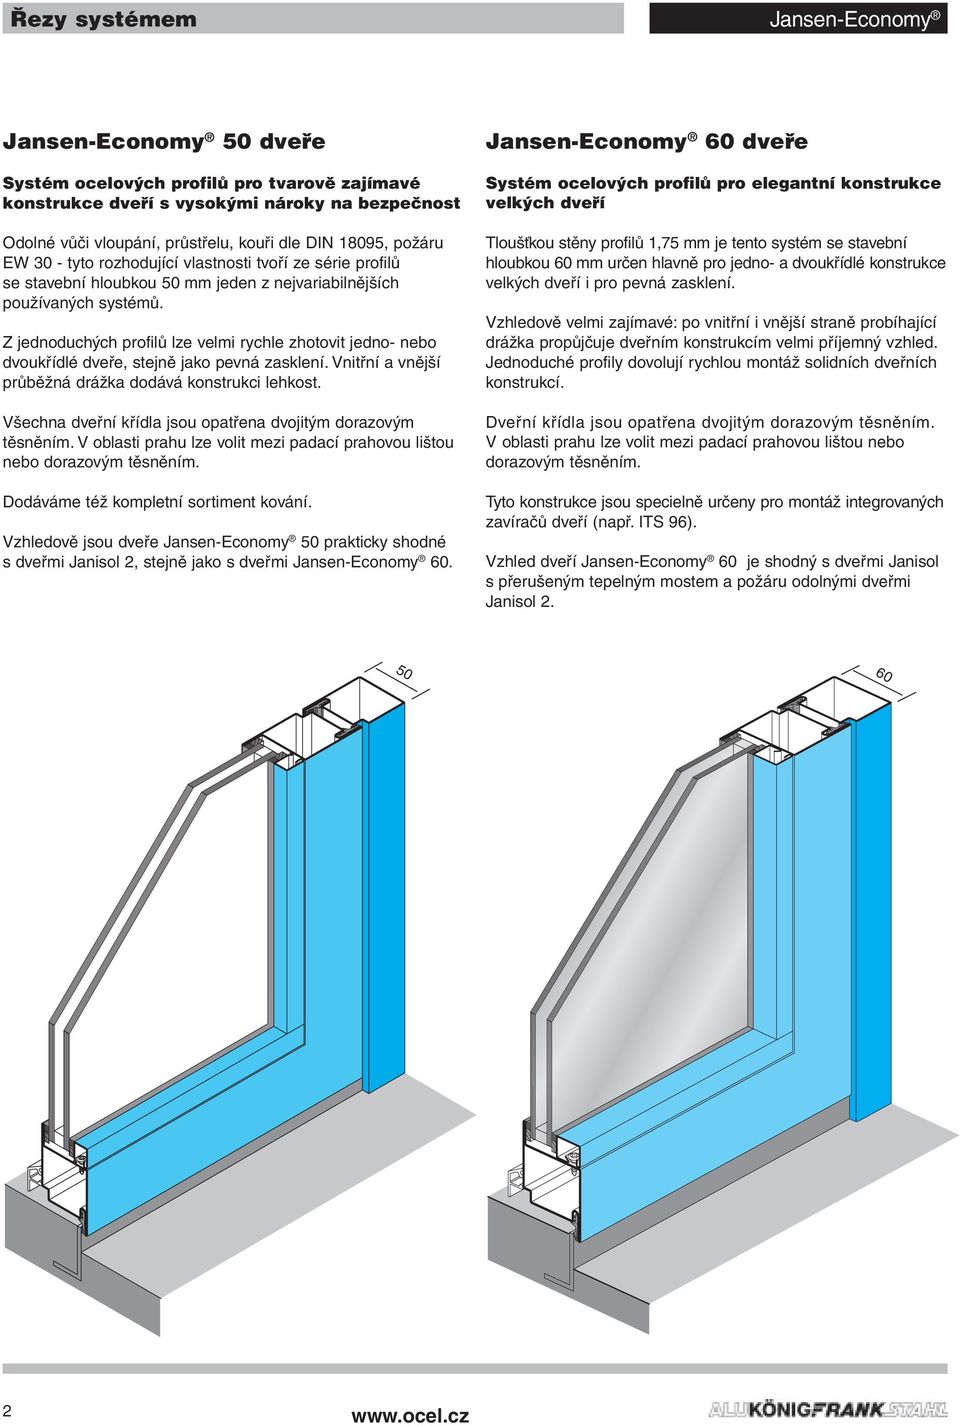 Z jednoduchých profilů lze velmi rychle zhotovit jedno- nebo dvoukřídlé dveře, stejně jako pevná zasklení. Vnitřní a vnější průběžná drážka dodává konstrukci lehkost.